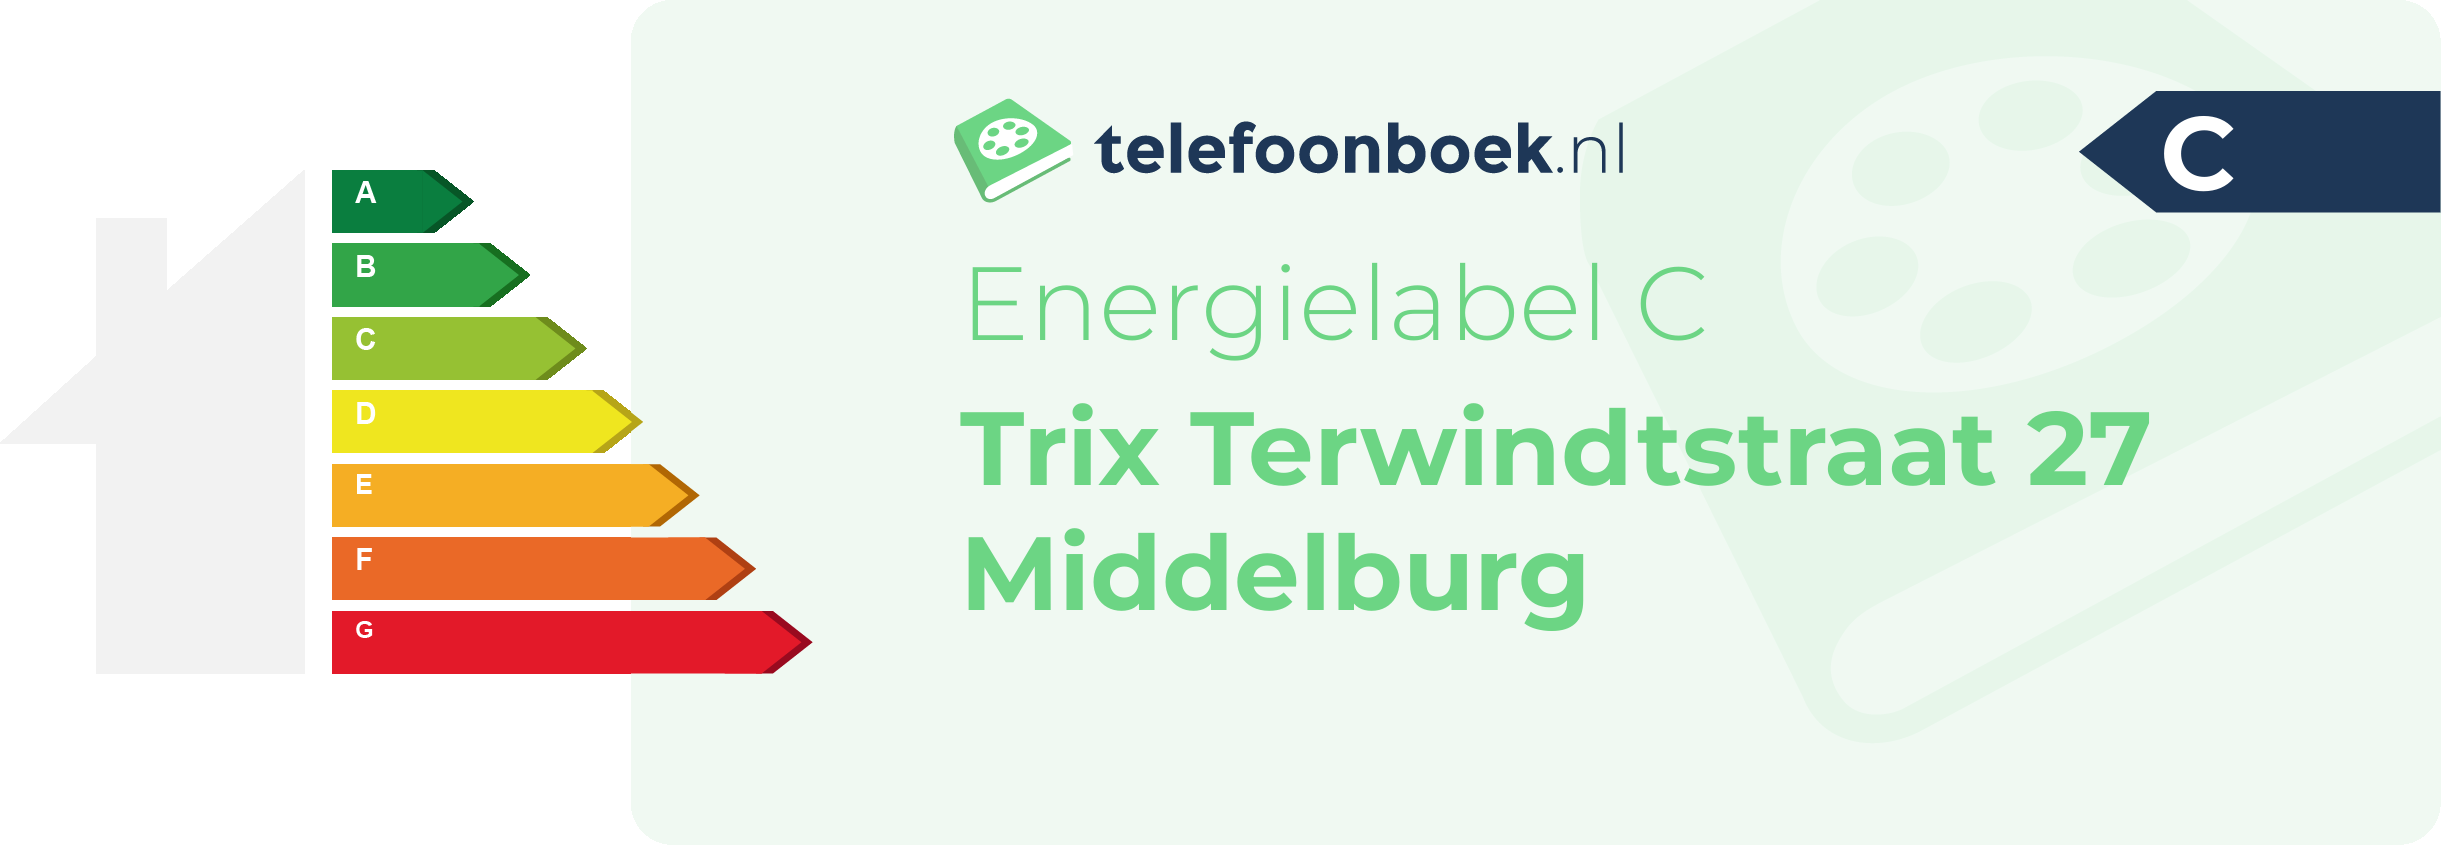 Energielabel Trix Terwindtstraat 27 Middelburg